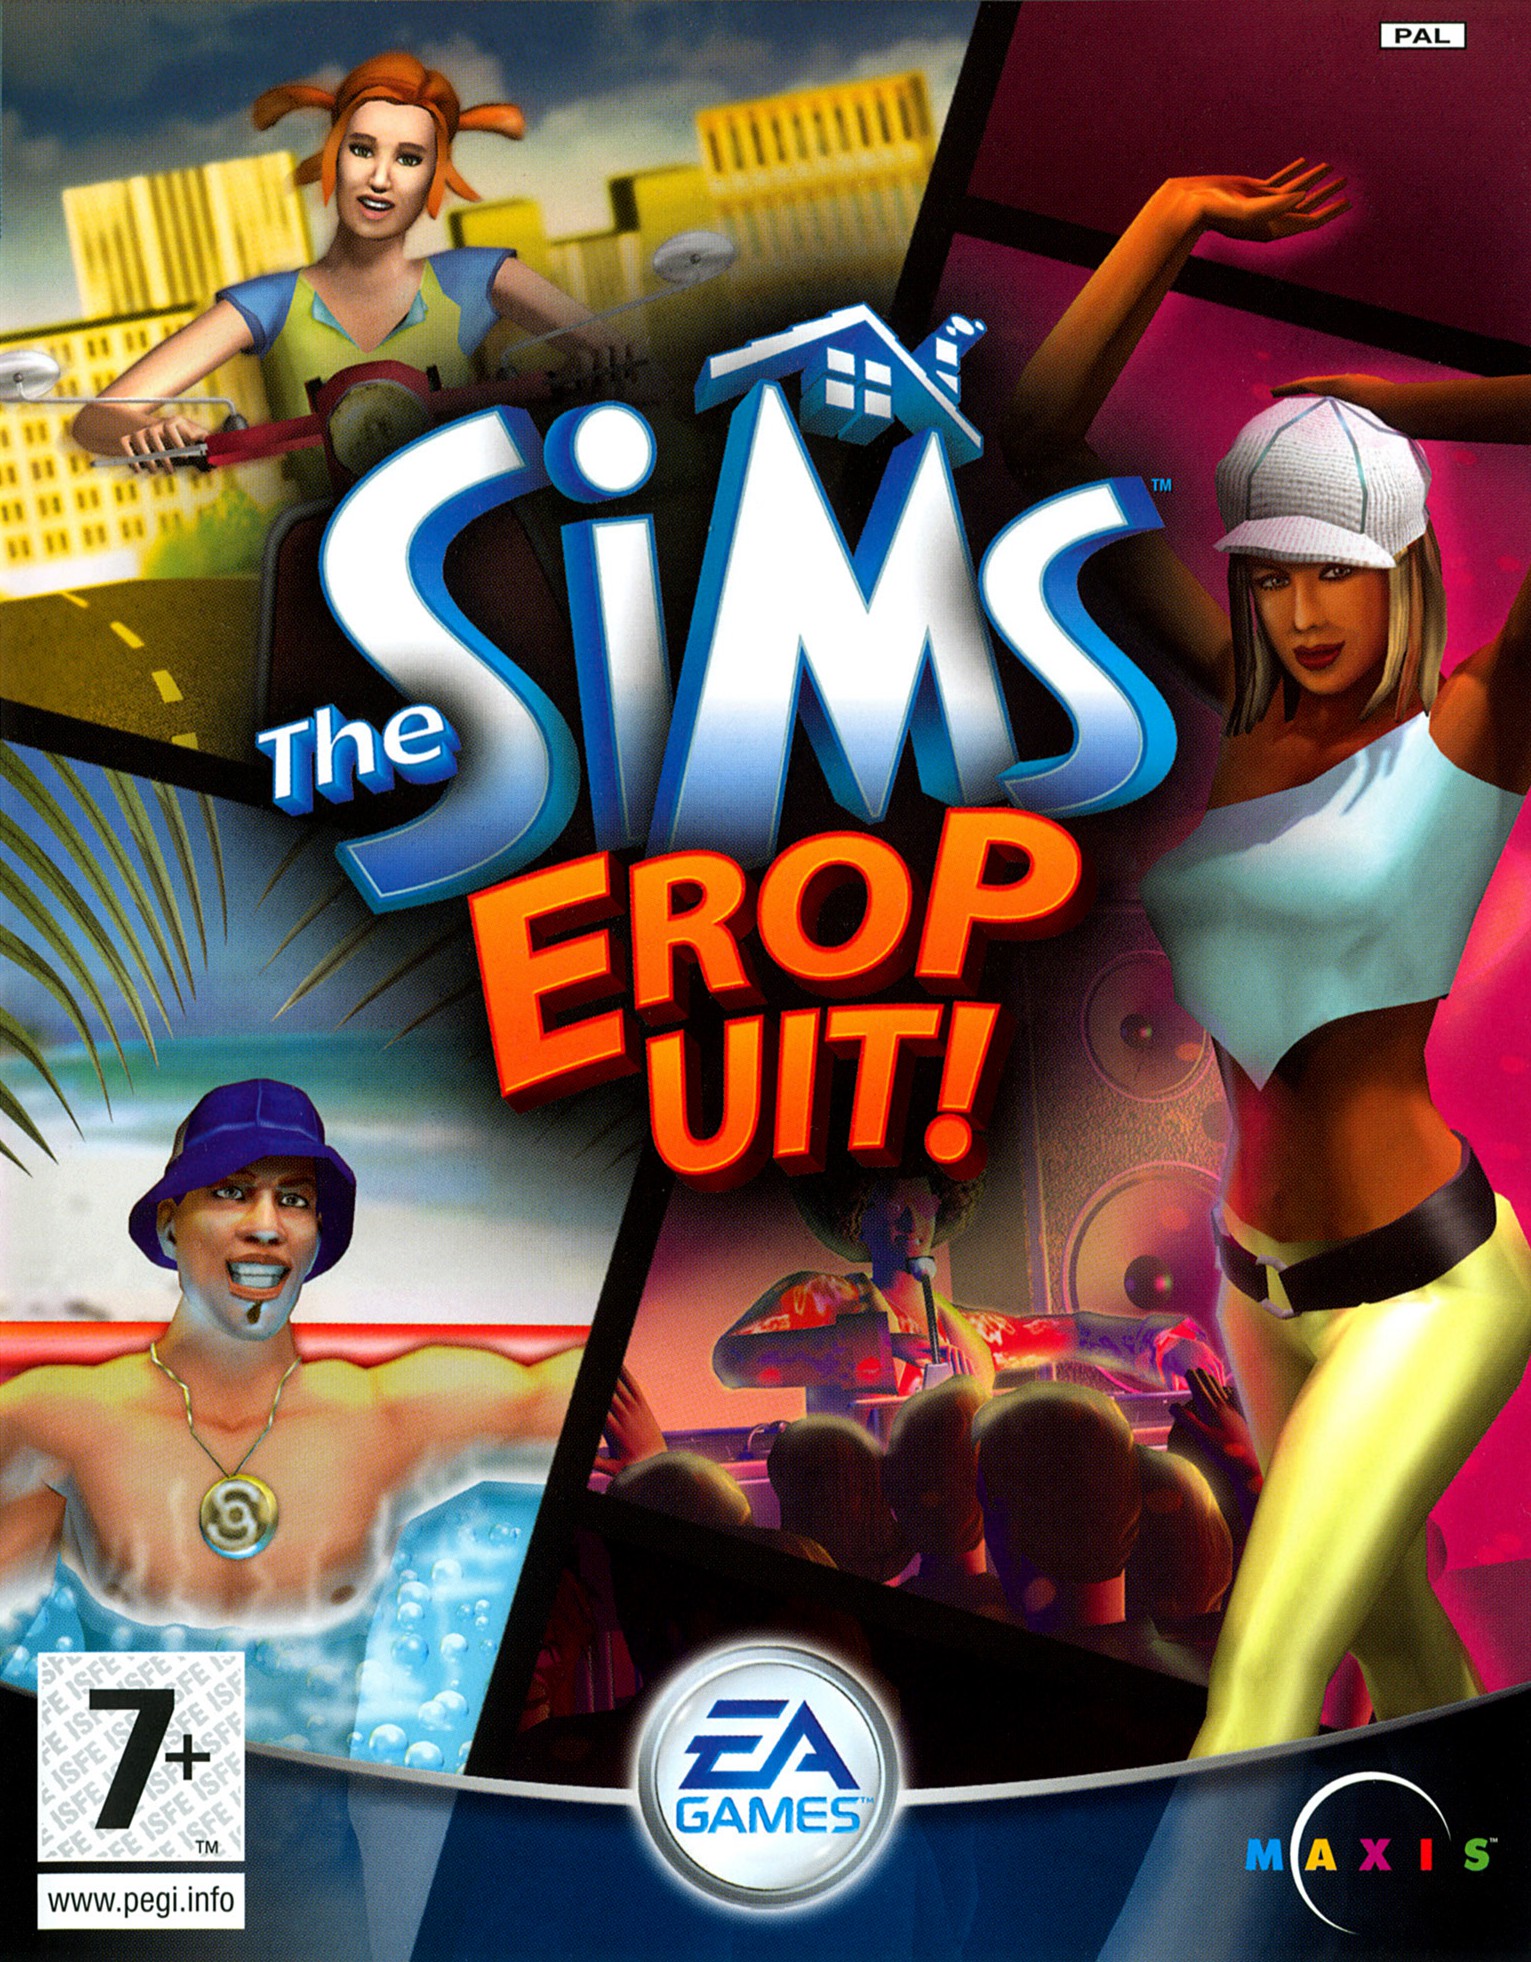 The Sims Erop uit! - Xbox Original Games